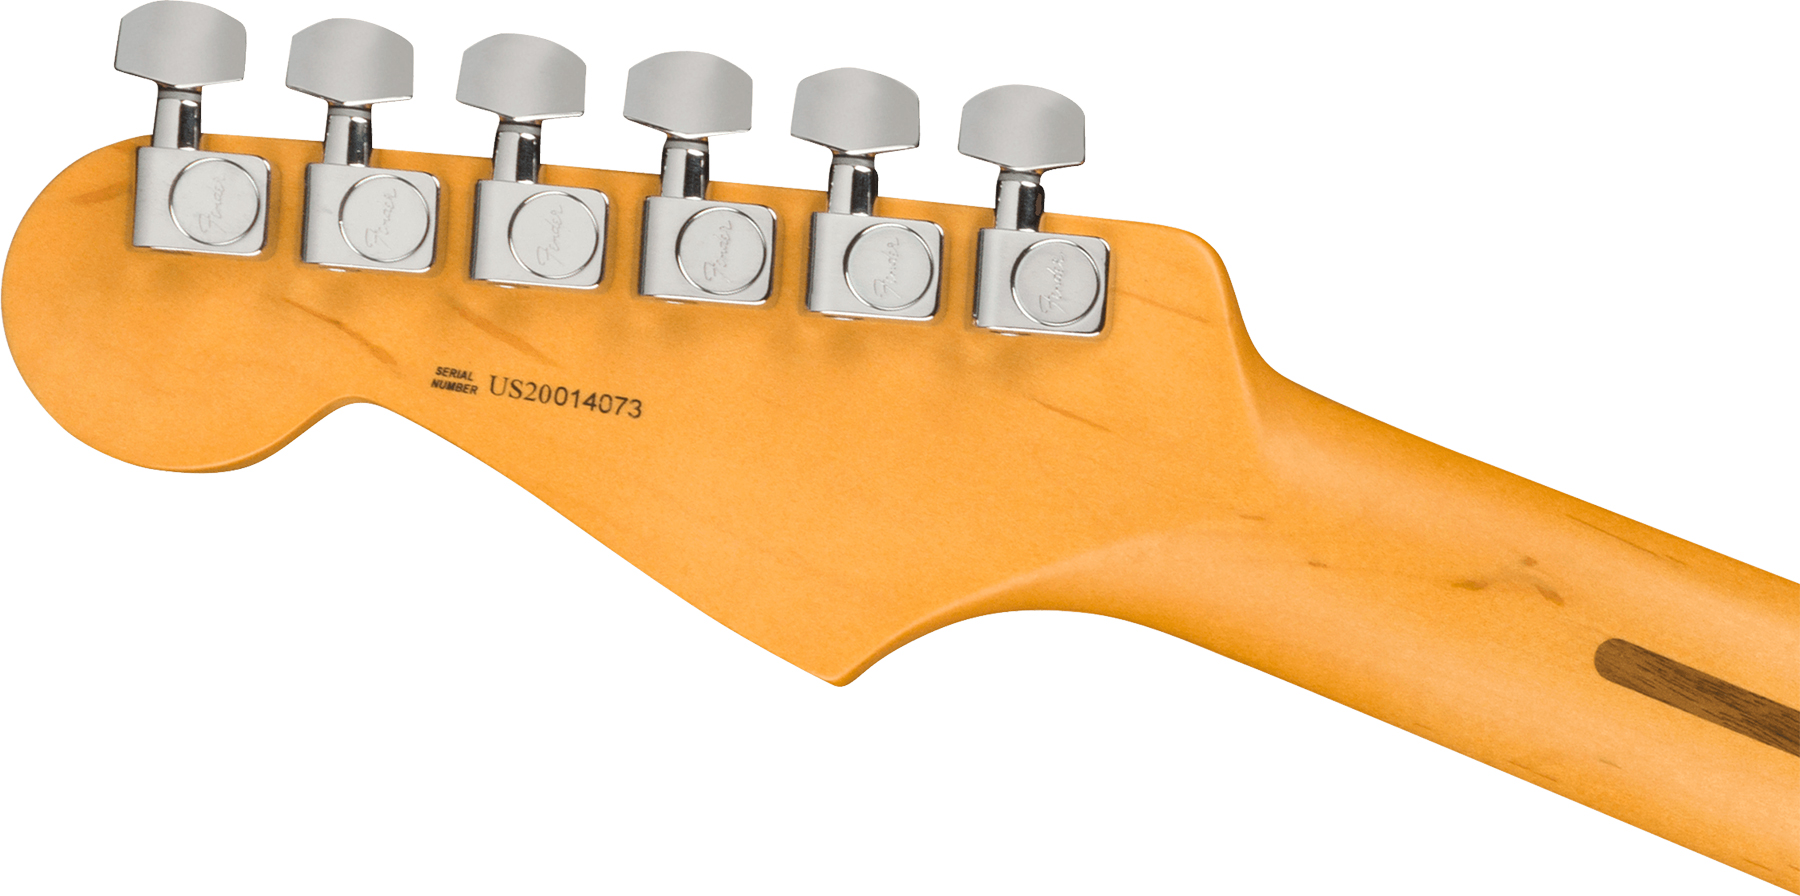 Fender Strat American Professional Ii Usa Rw - Mercury - Guitarra eléctrica con forma de str. - Variation 3